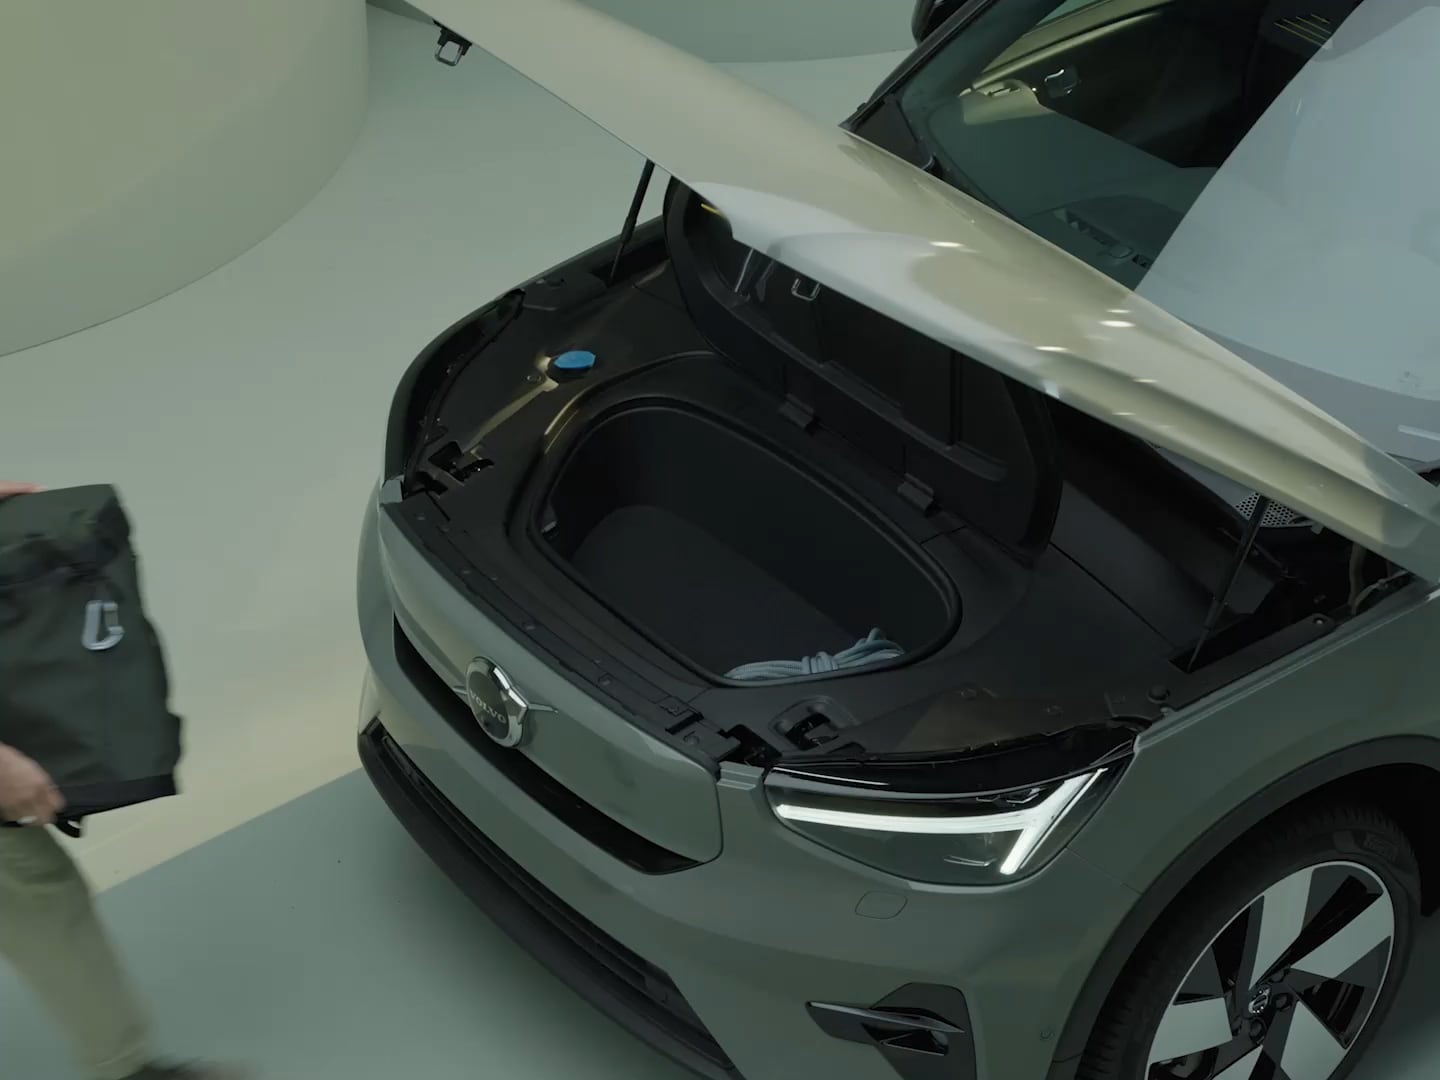 Soluciones de almacenamiento inteligentes en un Volvo XC40 Recharge eléctrico puro.